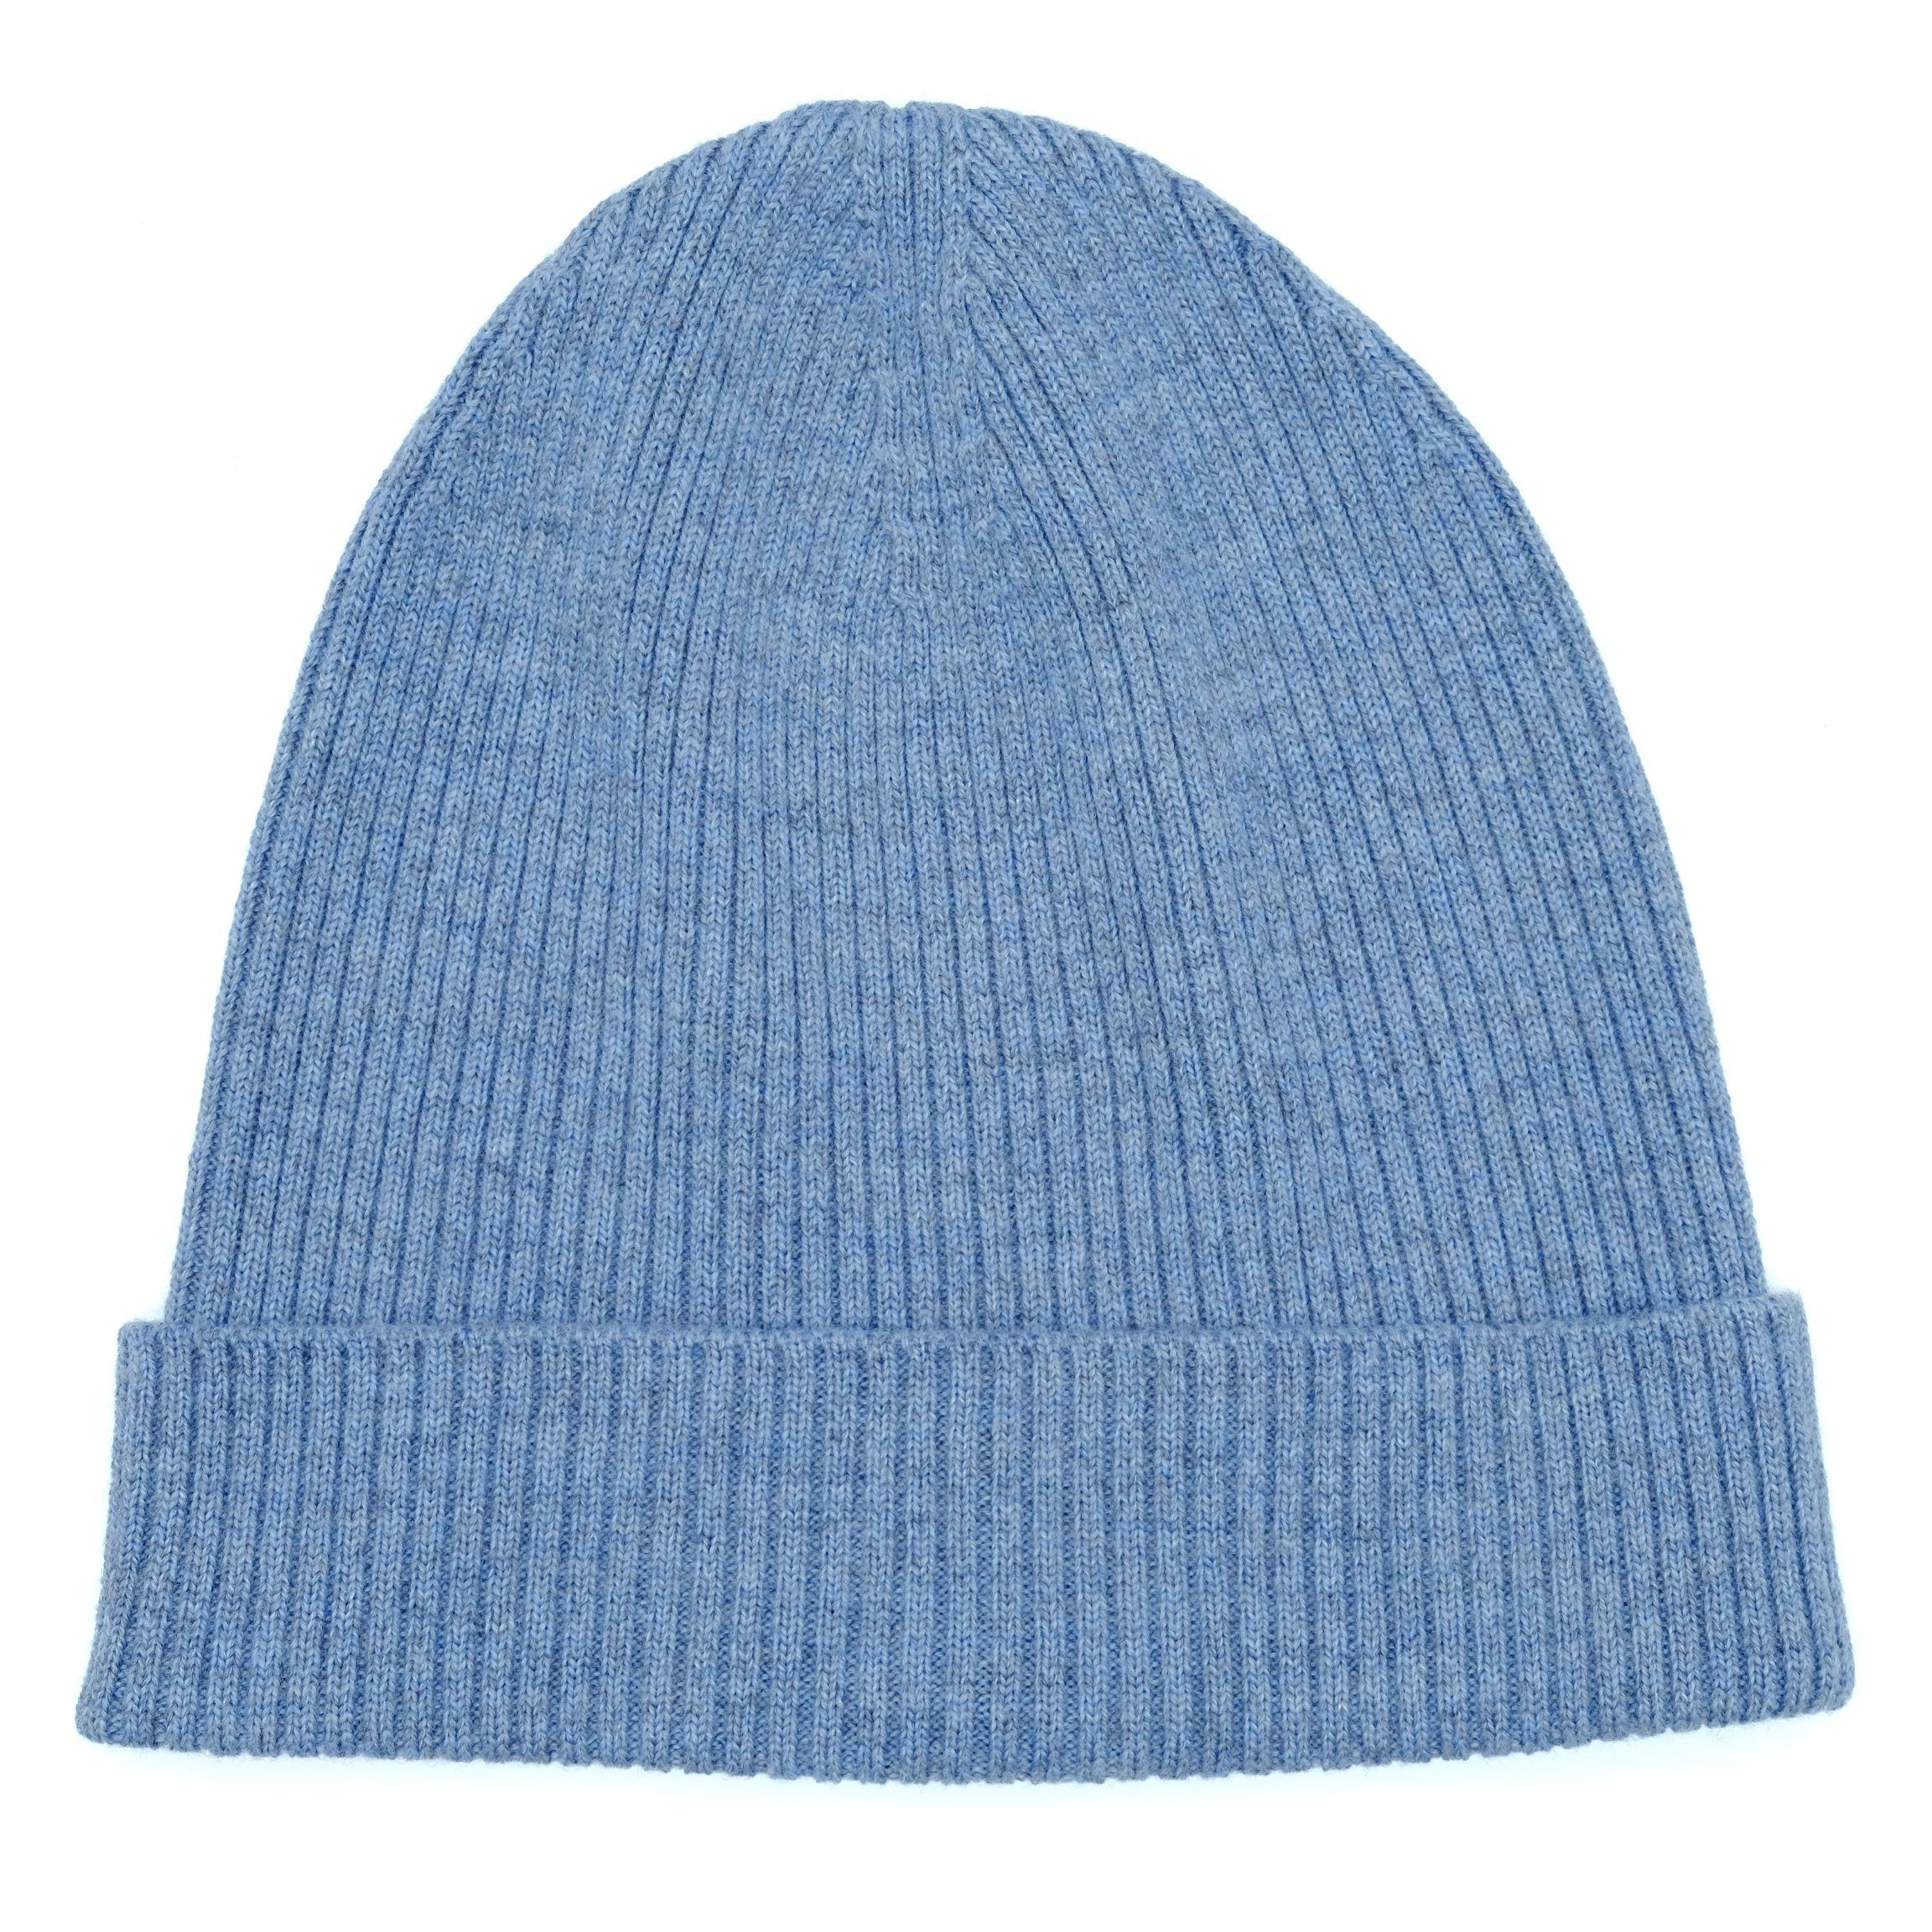 BEAZZ Strickmütze Wintermütze Wollmütze Damen Merino blaugrau WOLLE 100% und warm weich Feinstrick, meliert